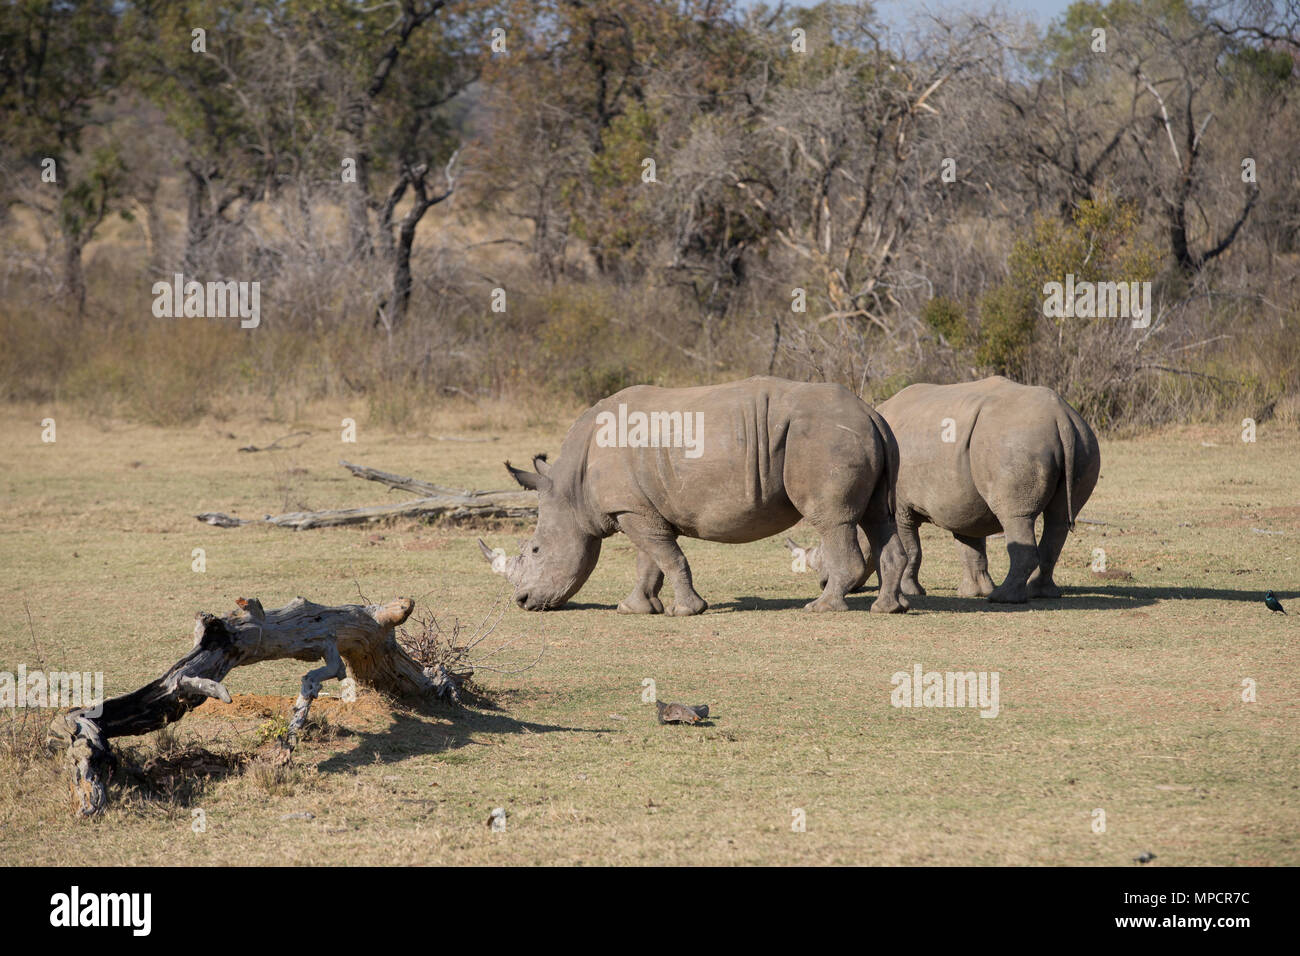 Welgevonden Game Reserve è un 38,200ha riserva nella Provincia di Limpopo in Sud Africa. Foto Stock